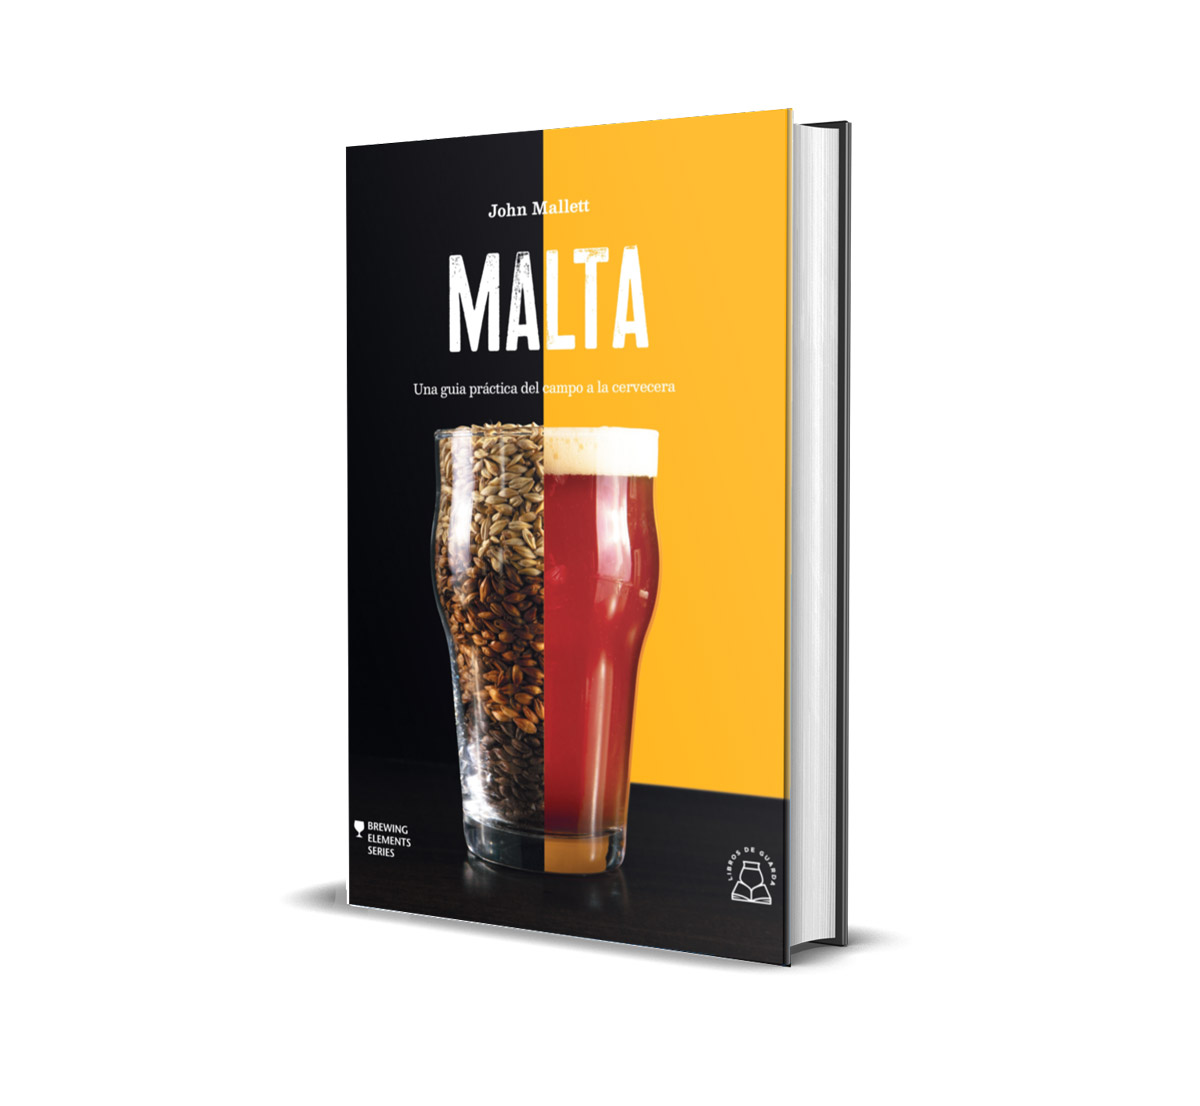 Libro 'Malta' de John Mallett. Editorial Libros de Guarda